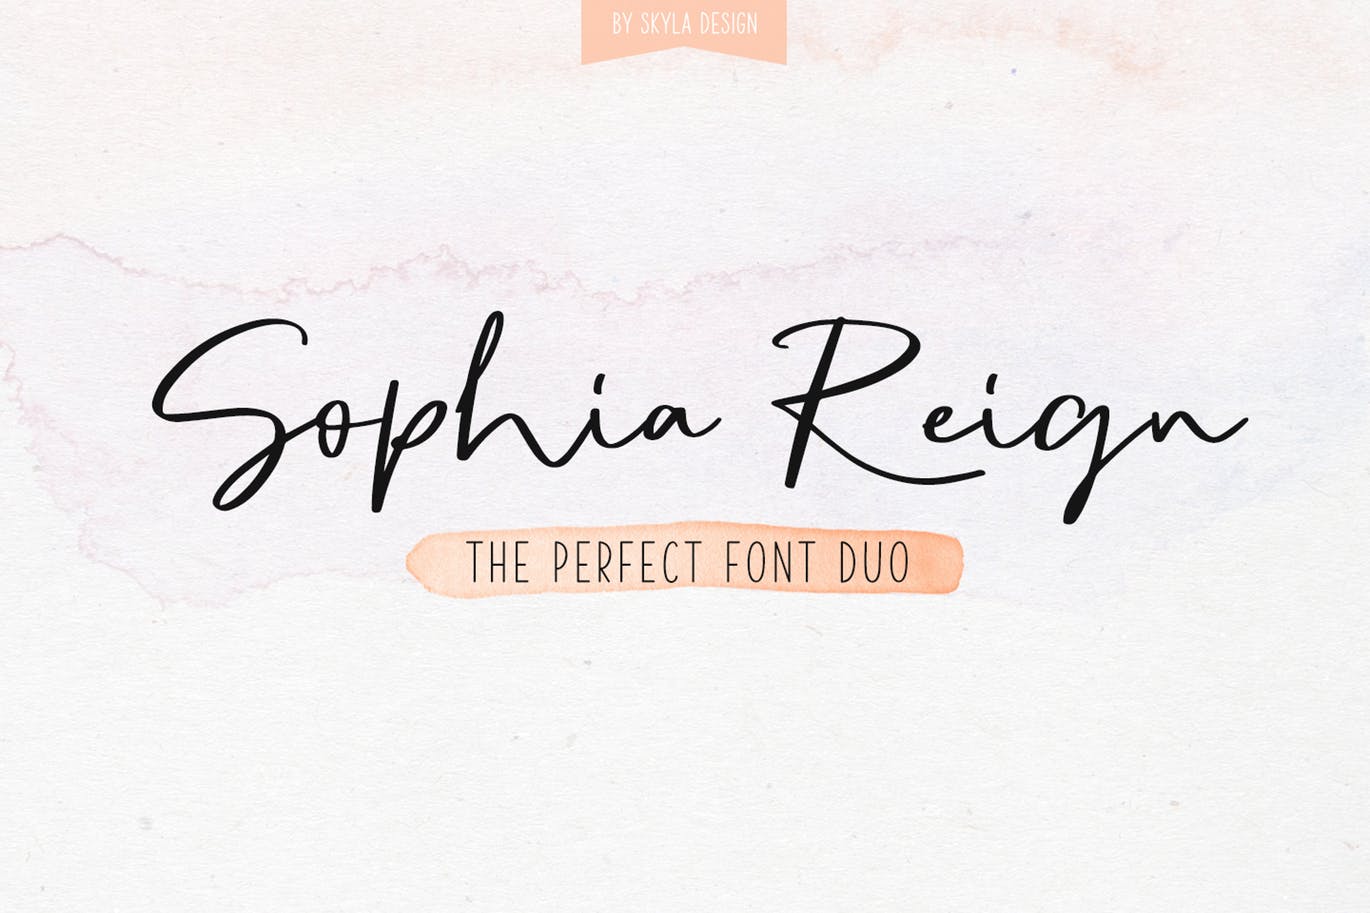 英文钢笔签名字体蚂蚁素材精选&大写字母正楷字体蚂蚁素材精选二重奏 Sophia Reign signature font duo插图